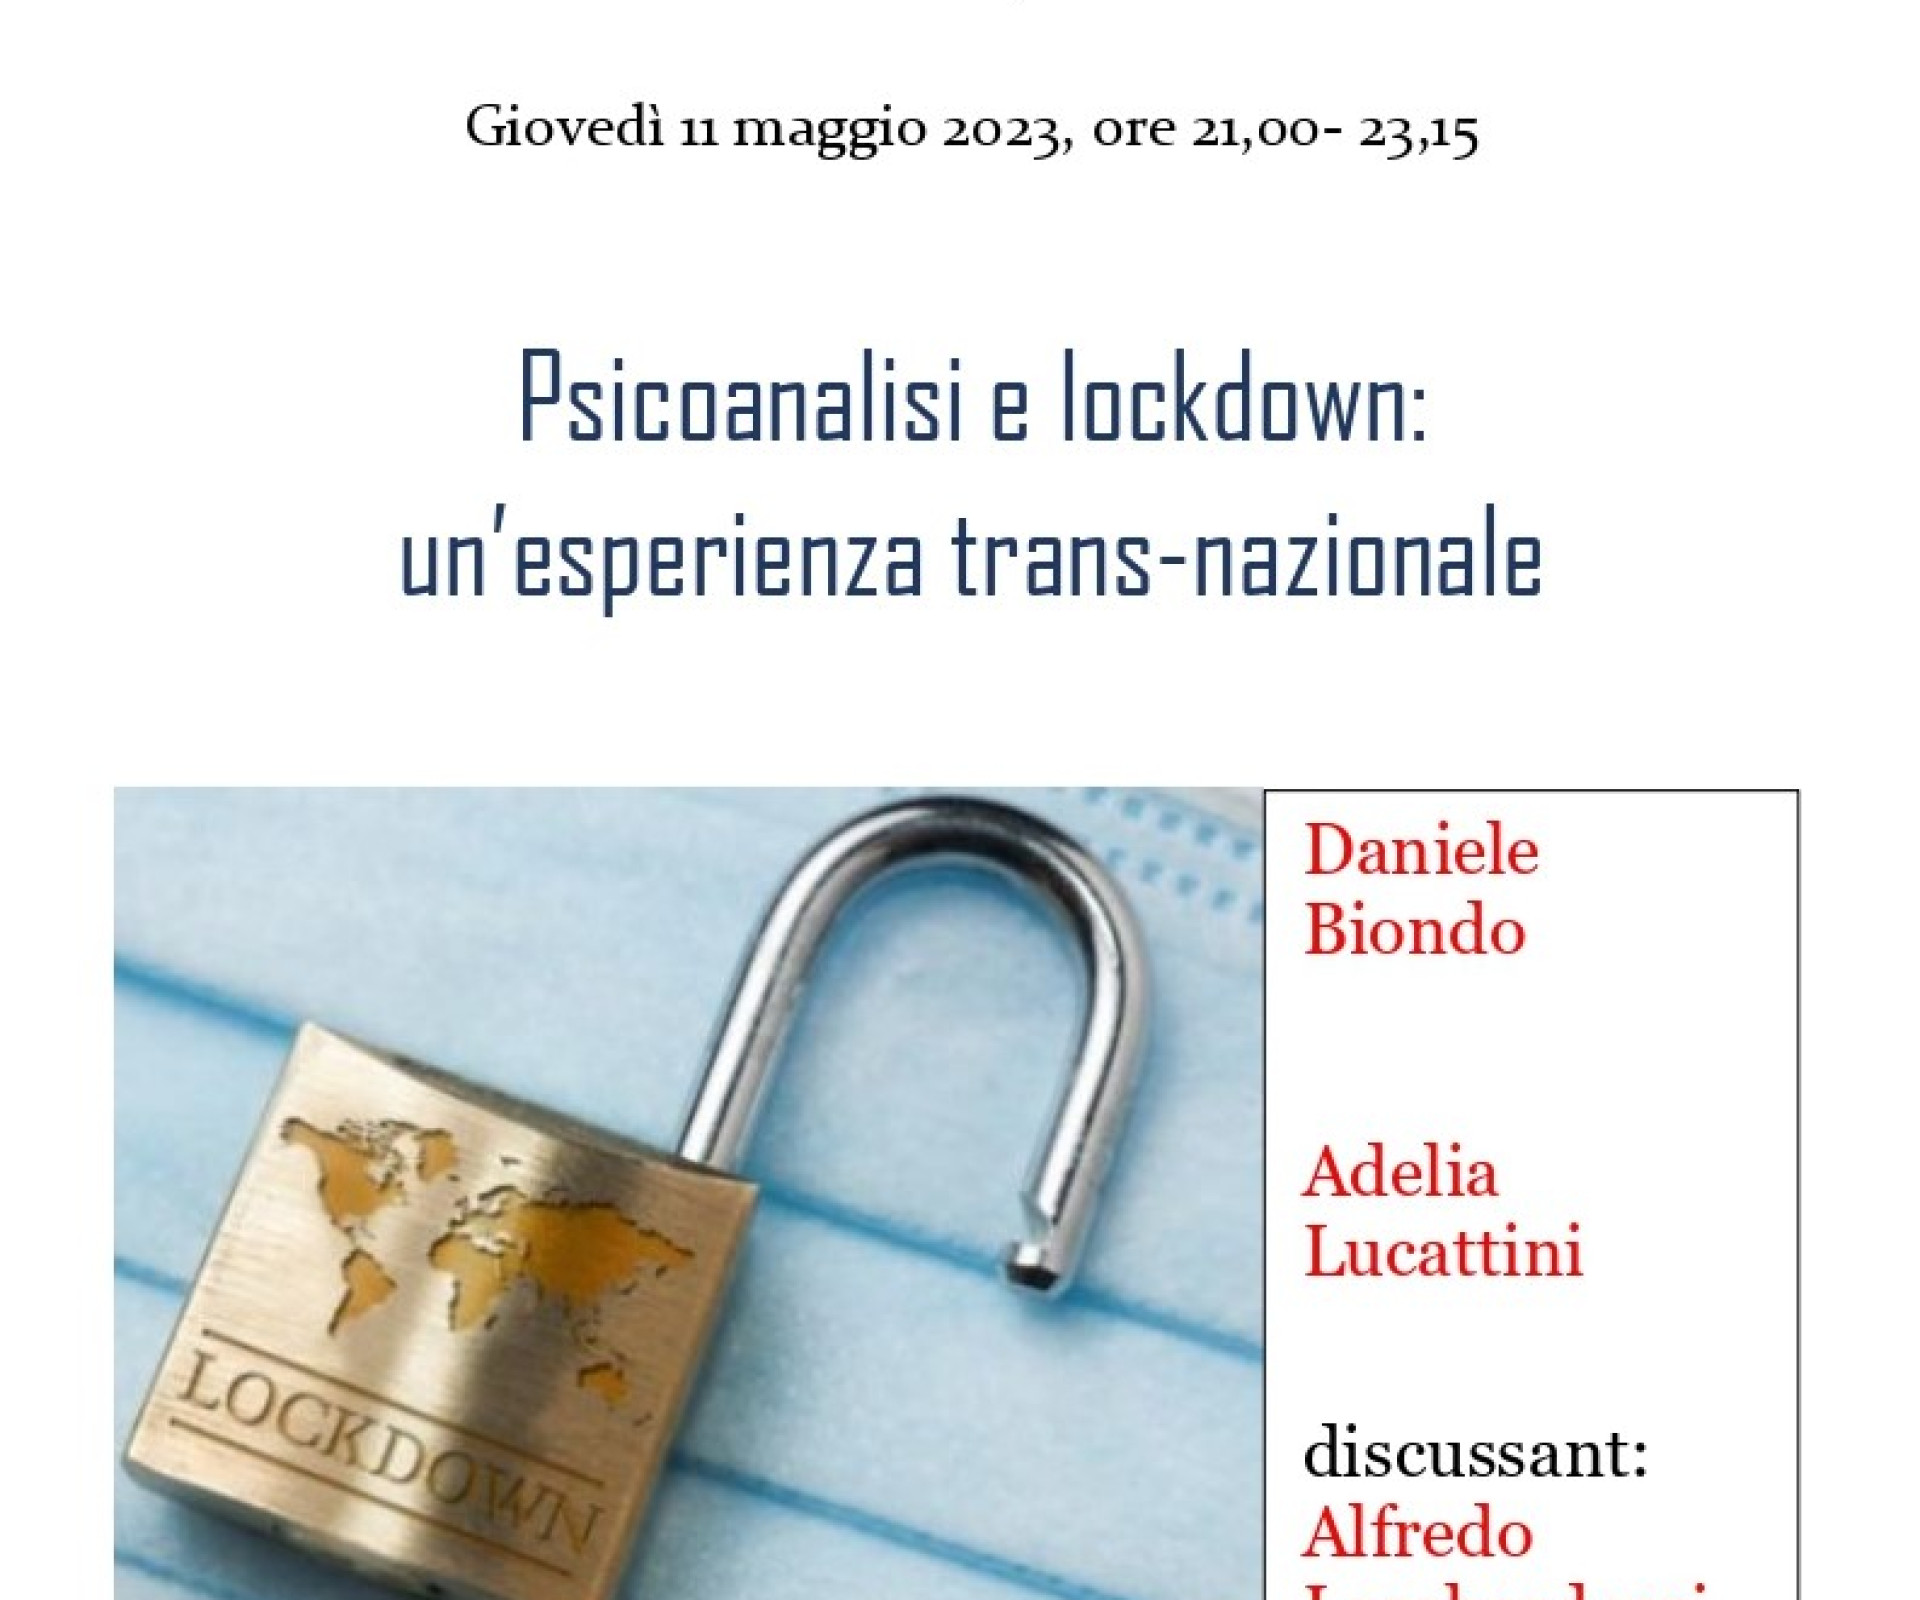 Psicoanalisi e lockdown: un’esperienza trans-nazionale.